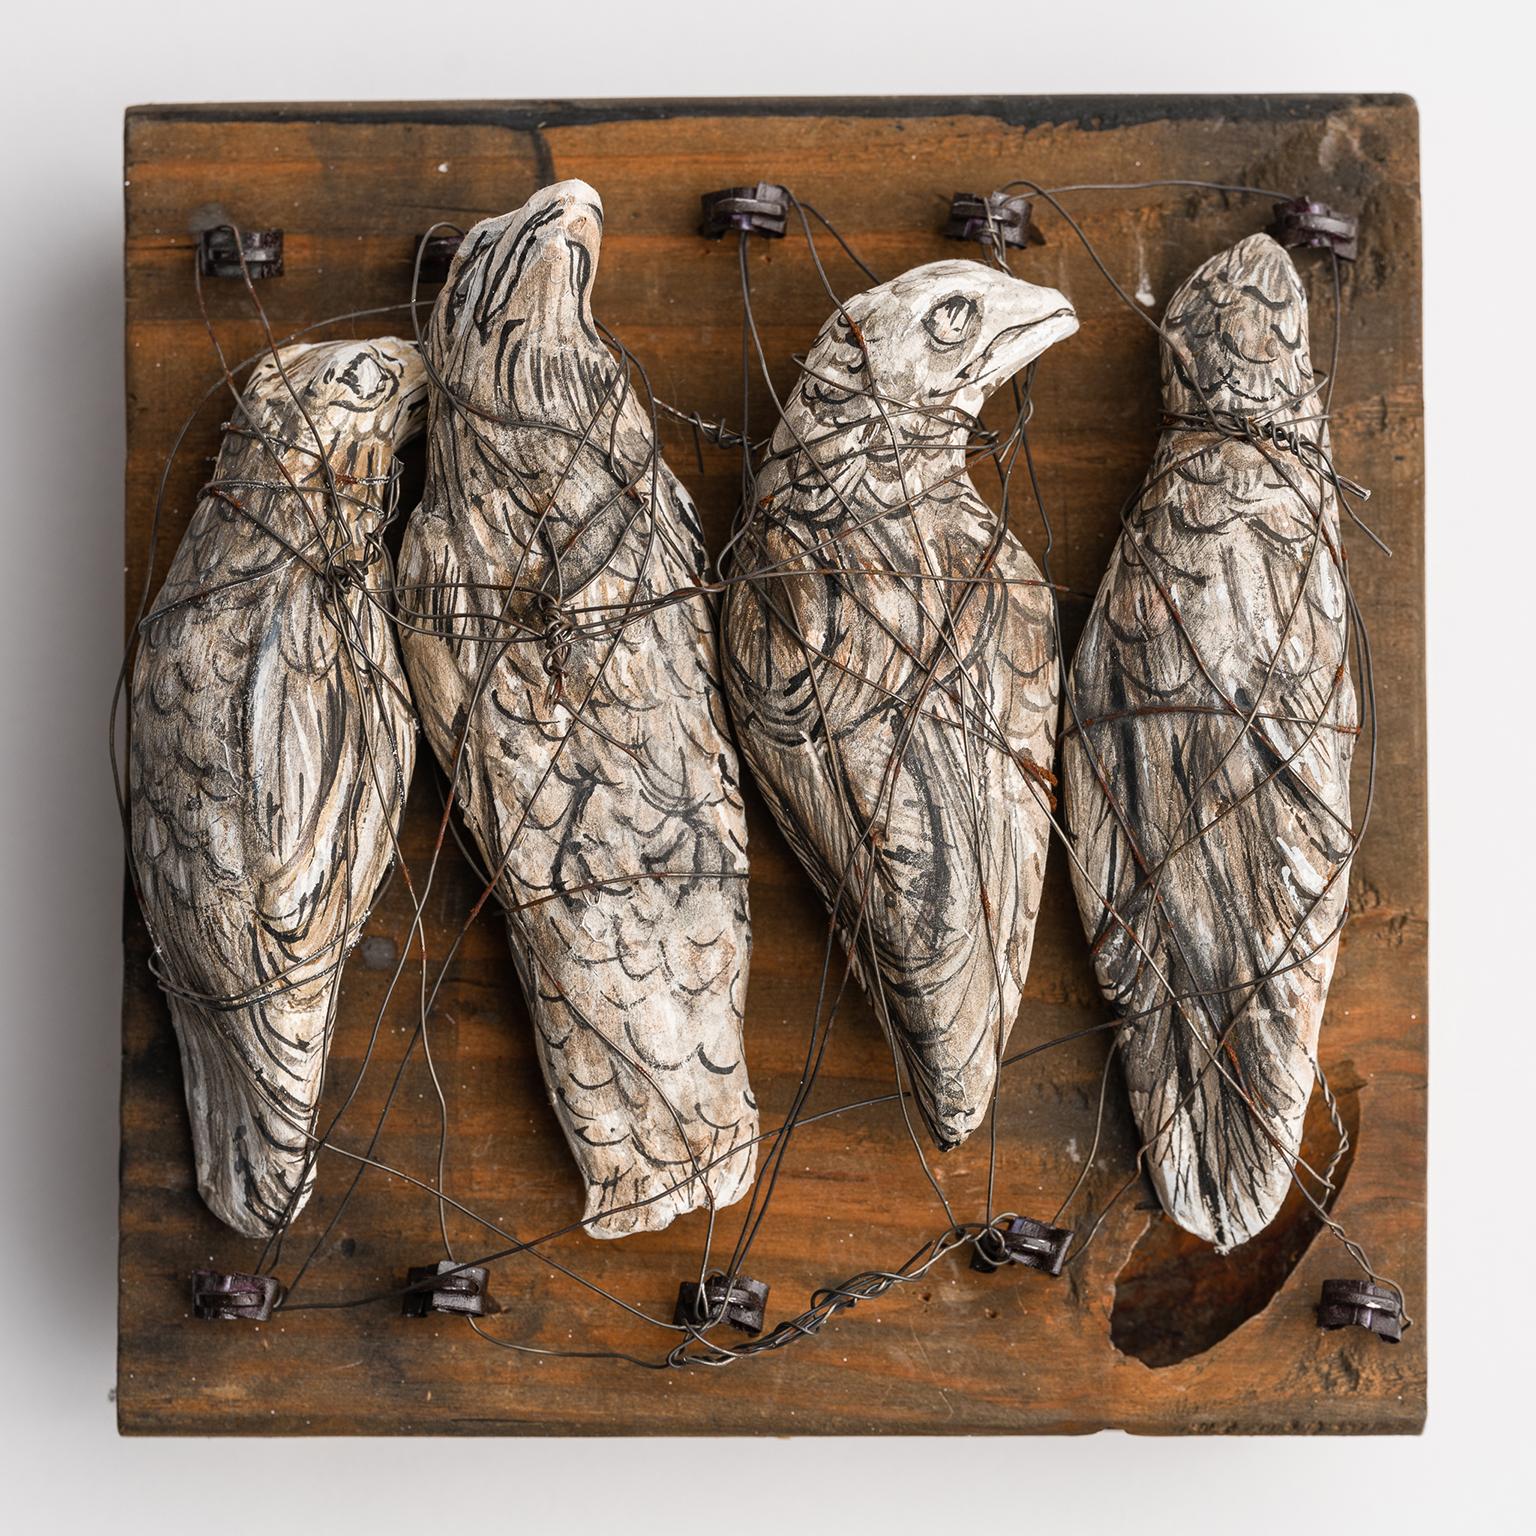 Skulptur von Vögeln auf Holzplank: „Shanghaied“ – Mixed Media Art von Elizabeth Jordan